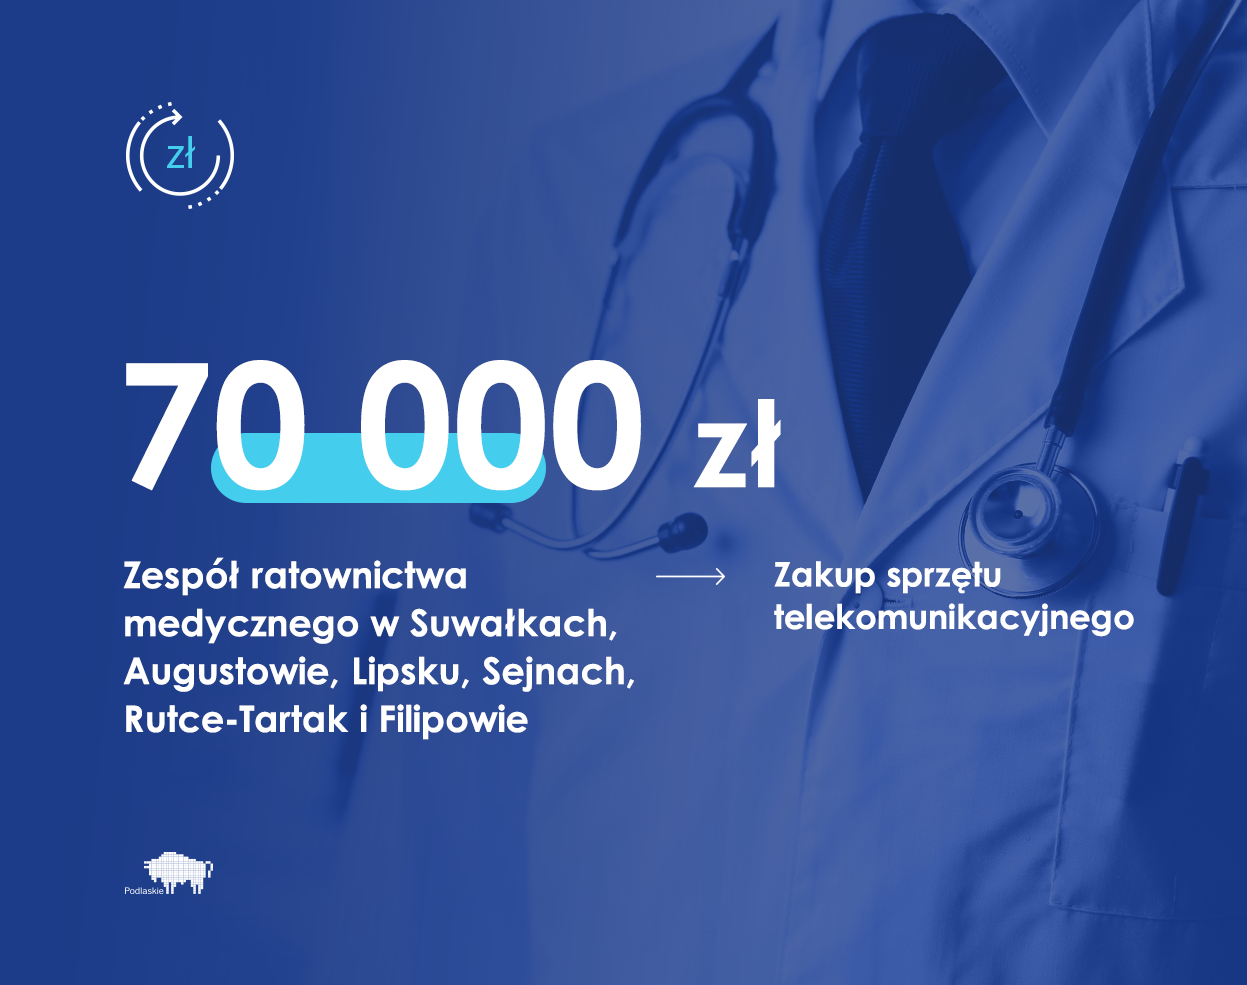 Grafika zawiera dane o przekazaniu 70 tys. zł na rzecz Zespołu ratownictwa medycznego w Suwałkach, Augustowie, Lipsku, Sejnach, Rutce-Tartak i Filipowie